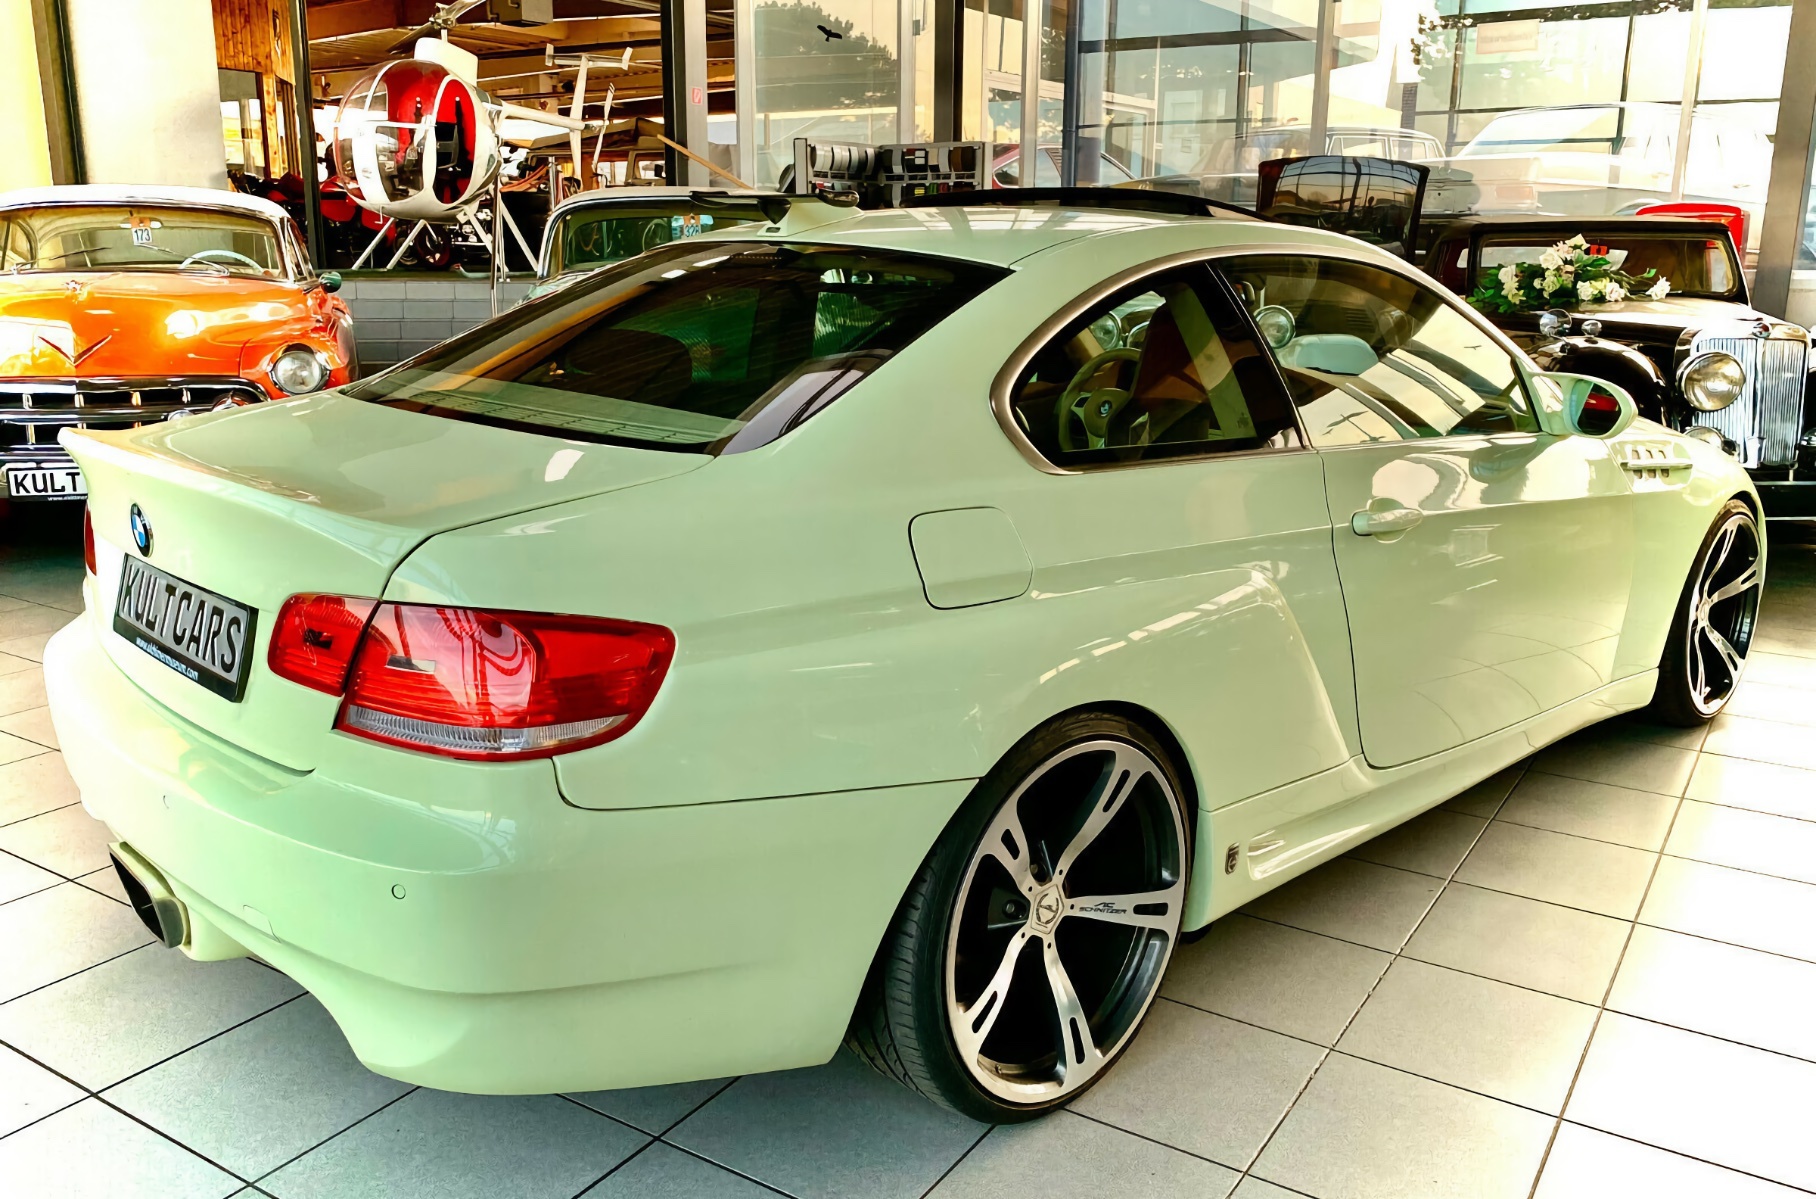 Единственный в мире BMW с V10 на газе выставили на продажу